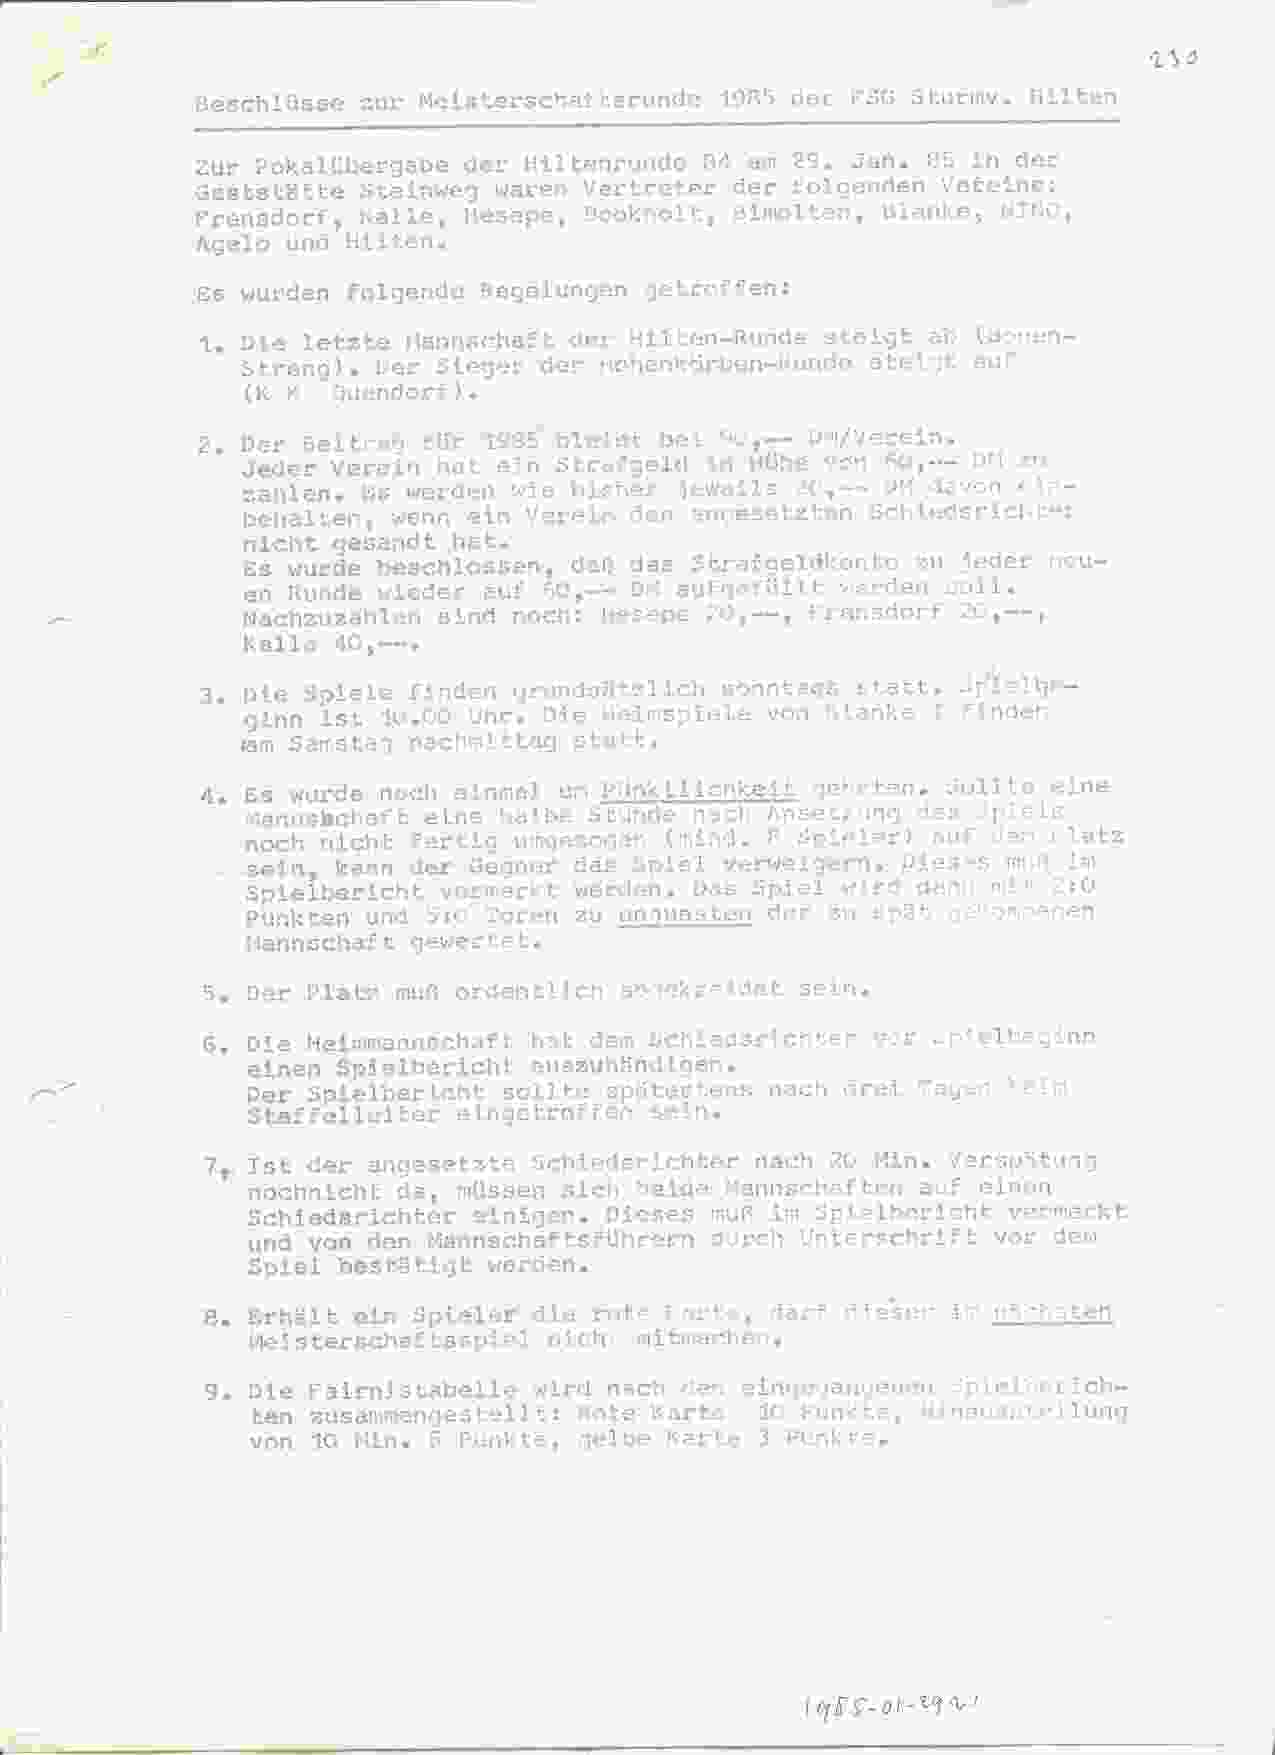 Nieuwe regels voor de Hilten Runde 1985